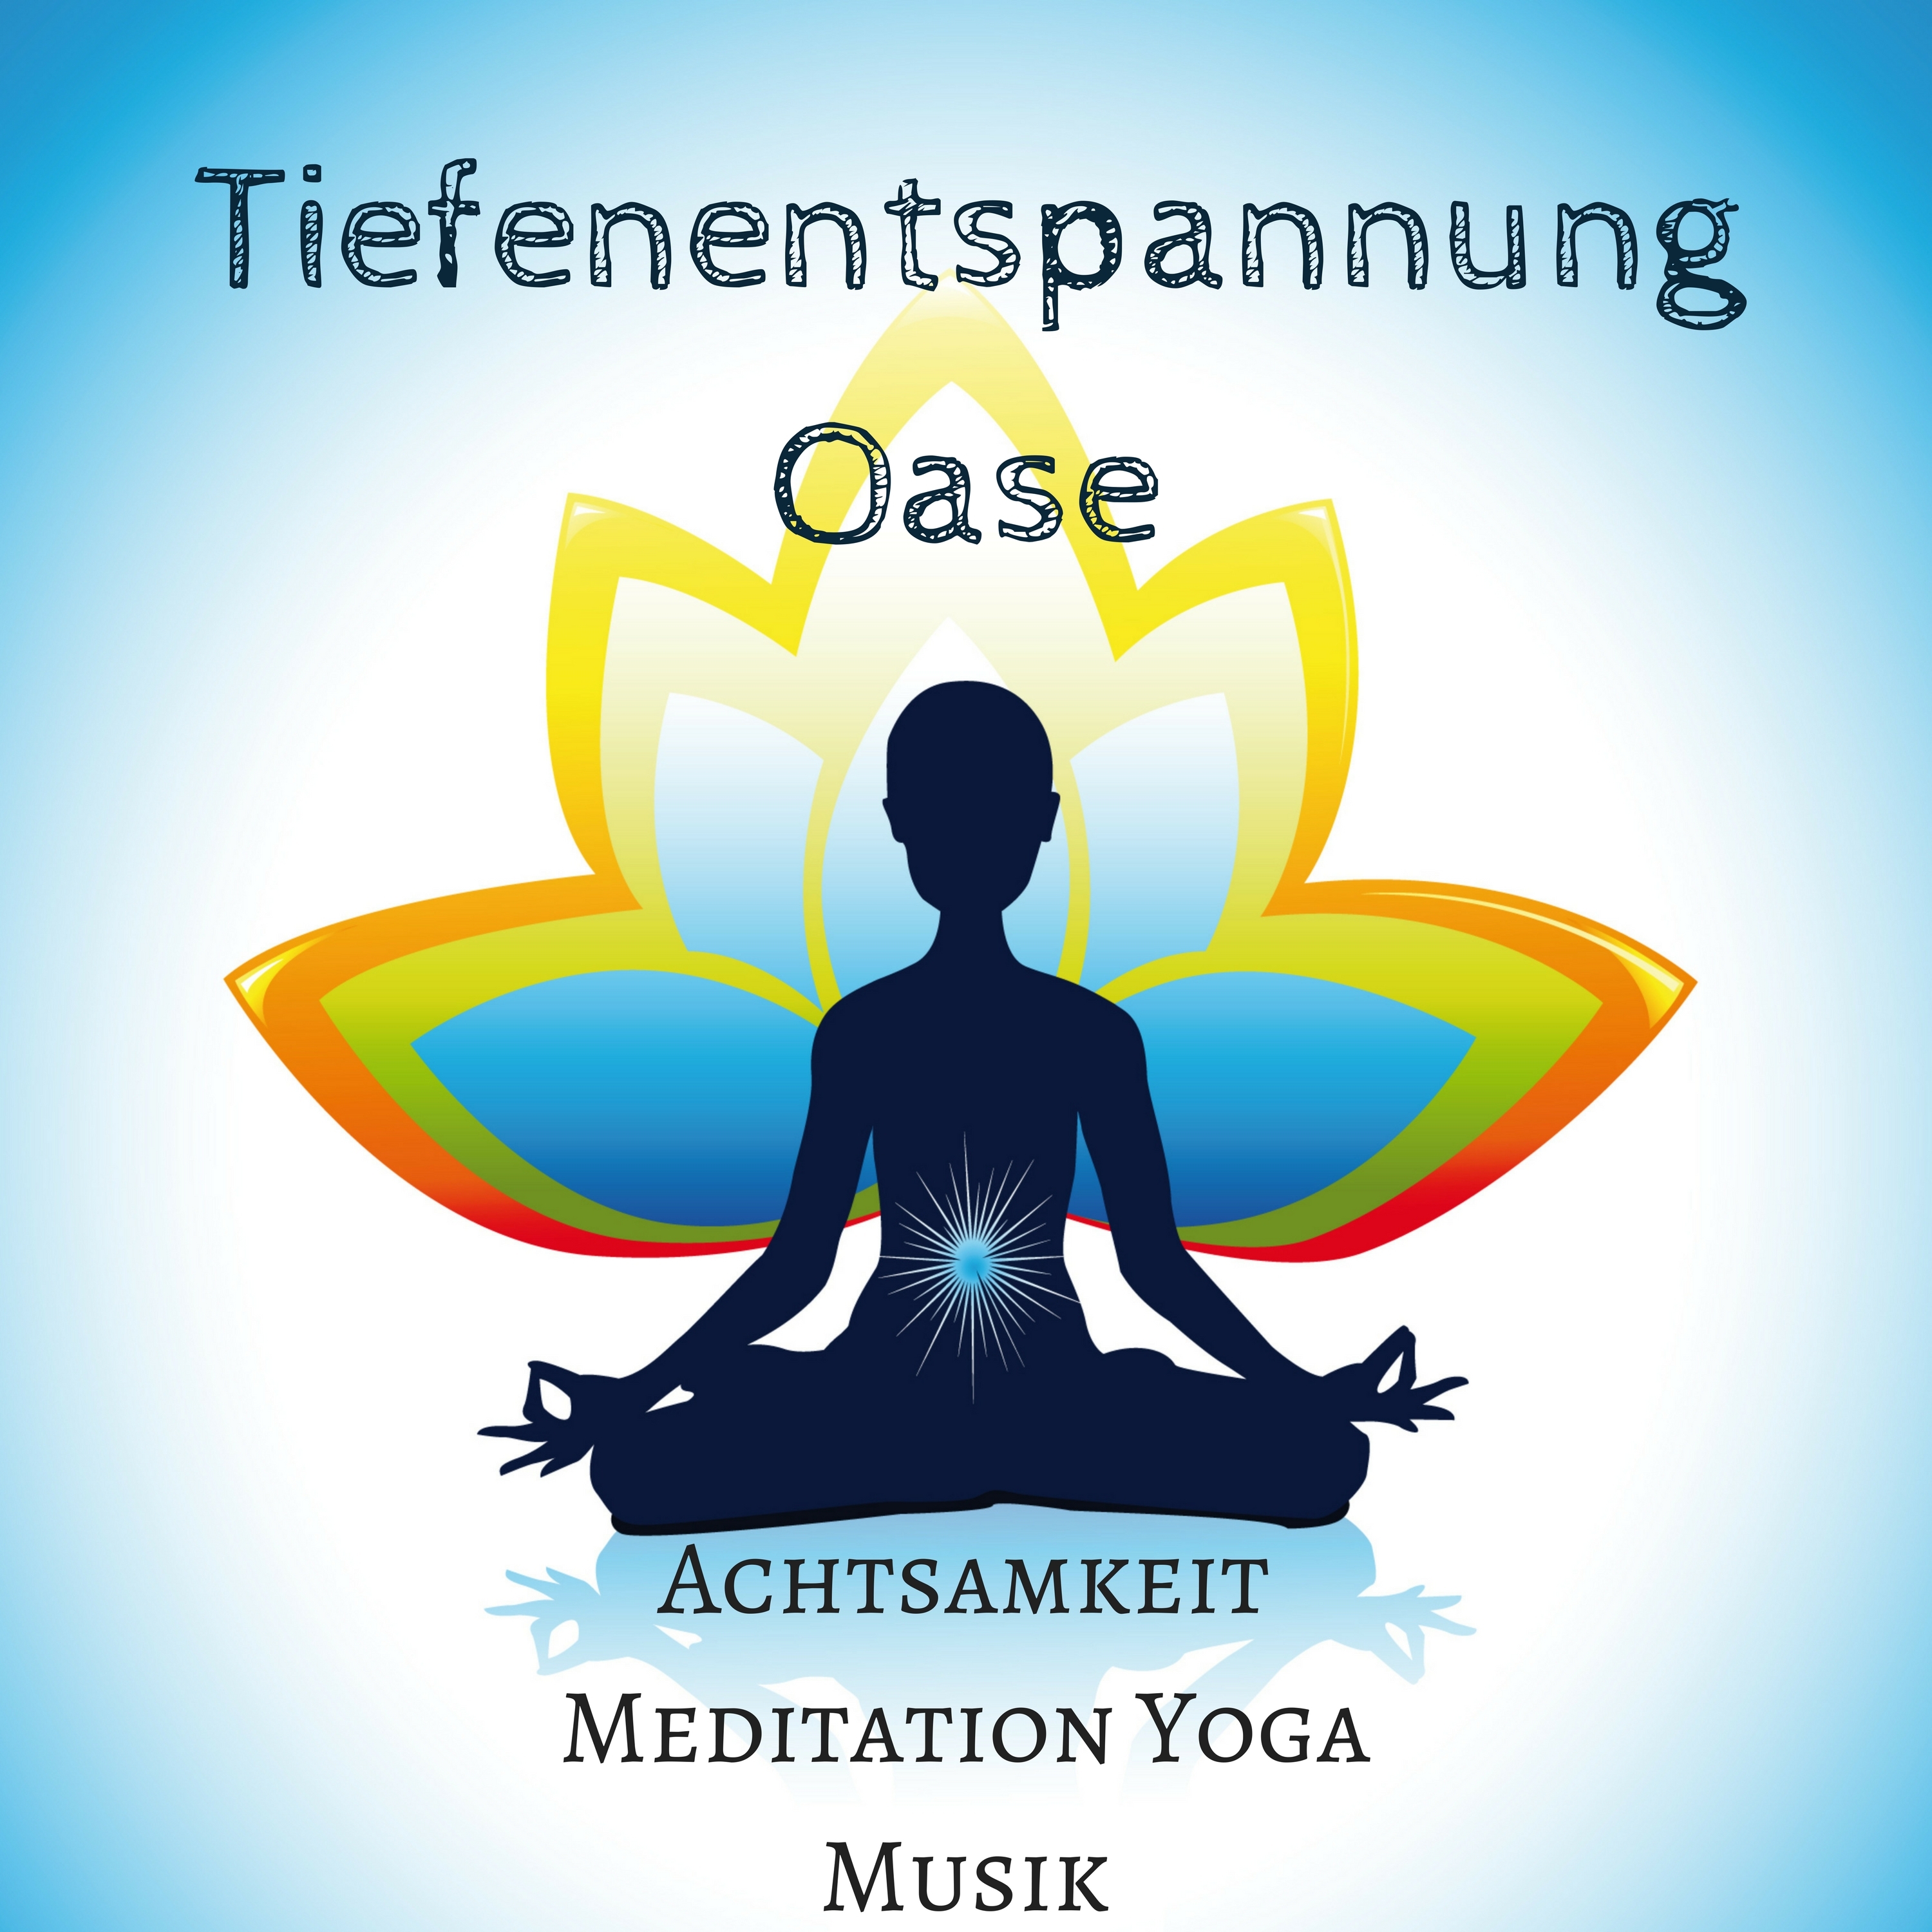 Tiefenentspannung Oase: Achtsamkeit Meditation Yoga Musik für Sonnengruß